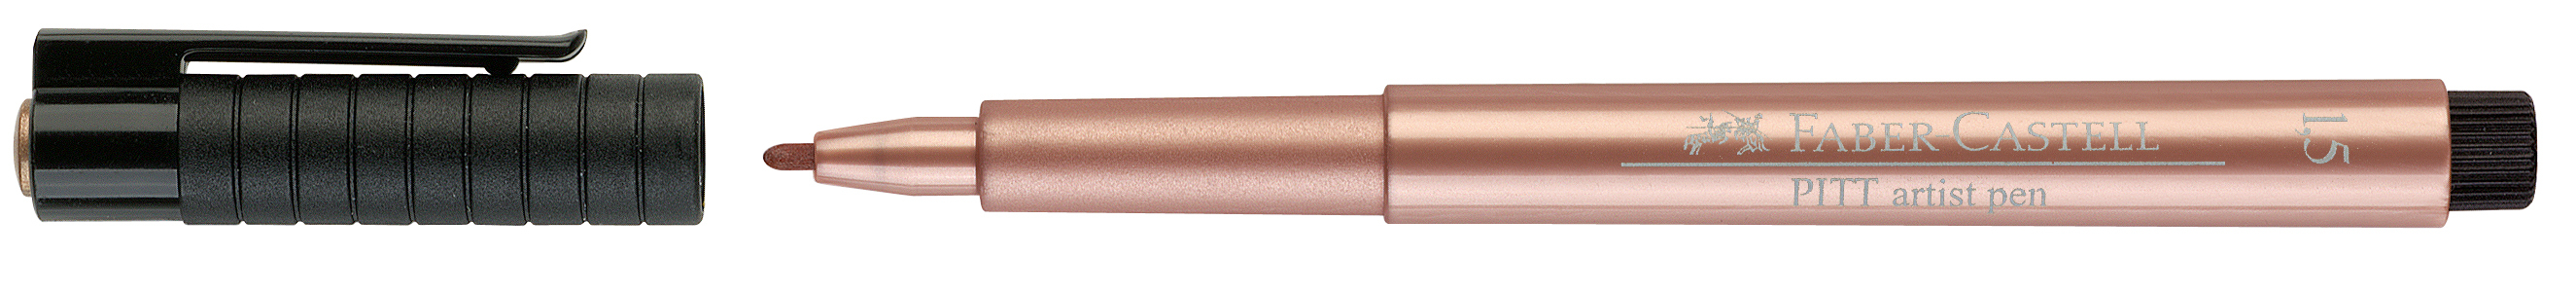 FABER-CASTELL Pitt Artist Pen 1,5mm 167352 kupfer kupfer